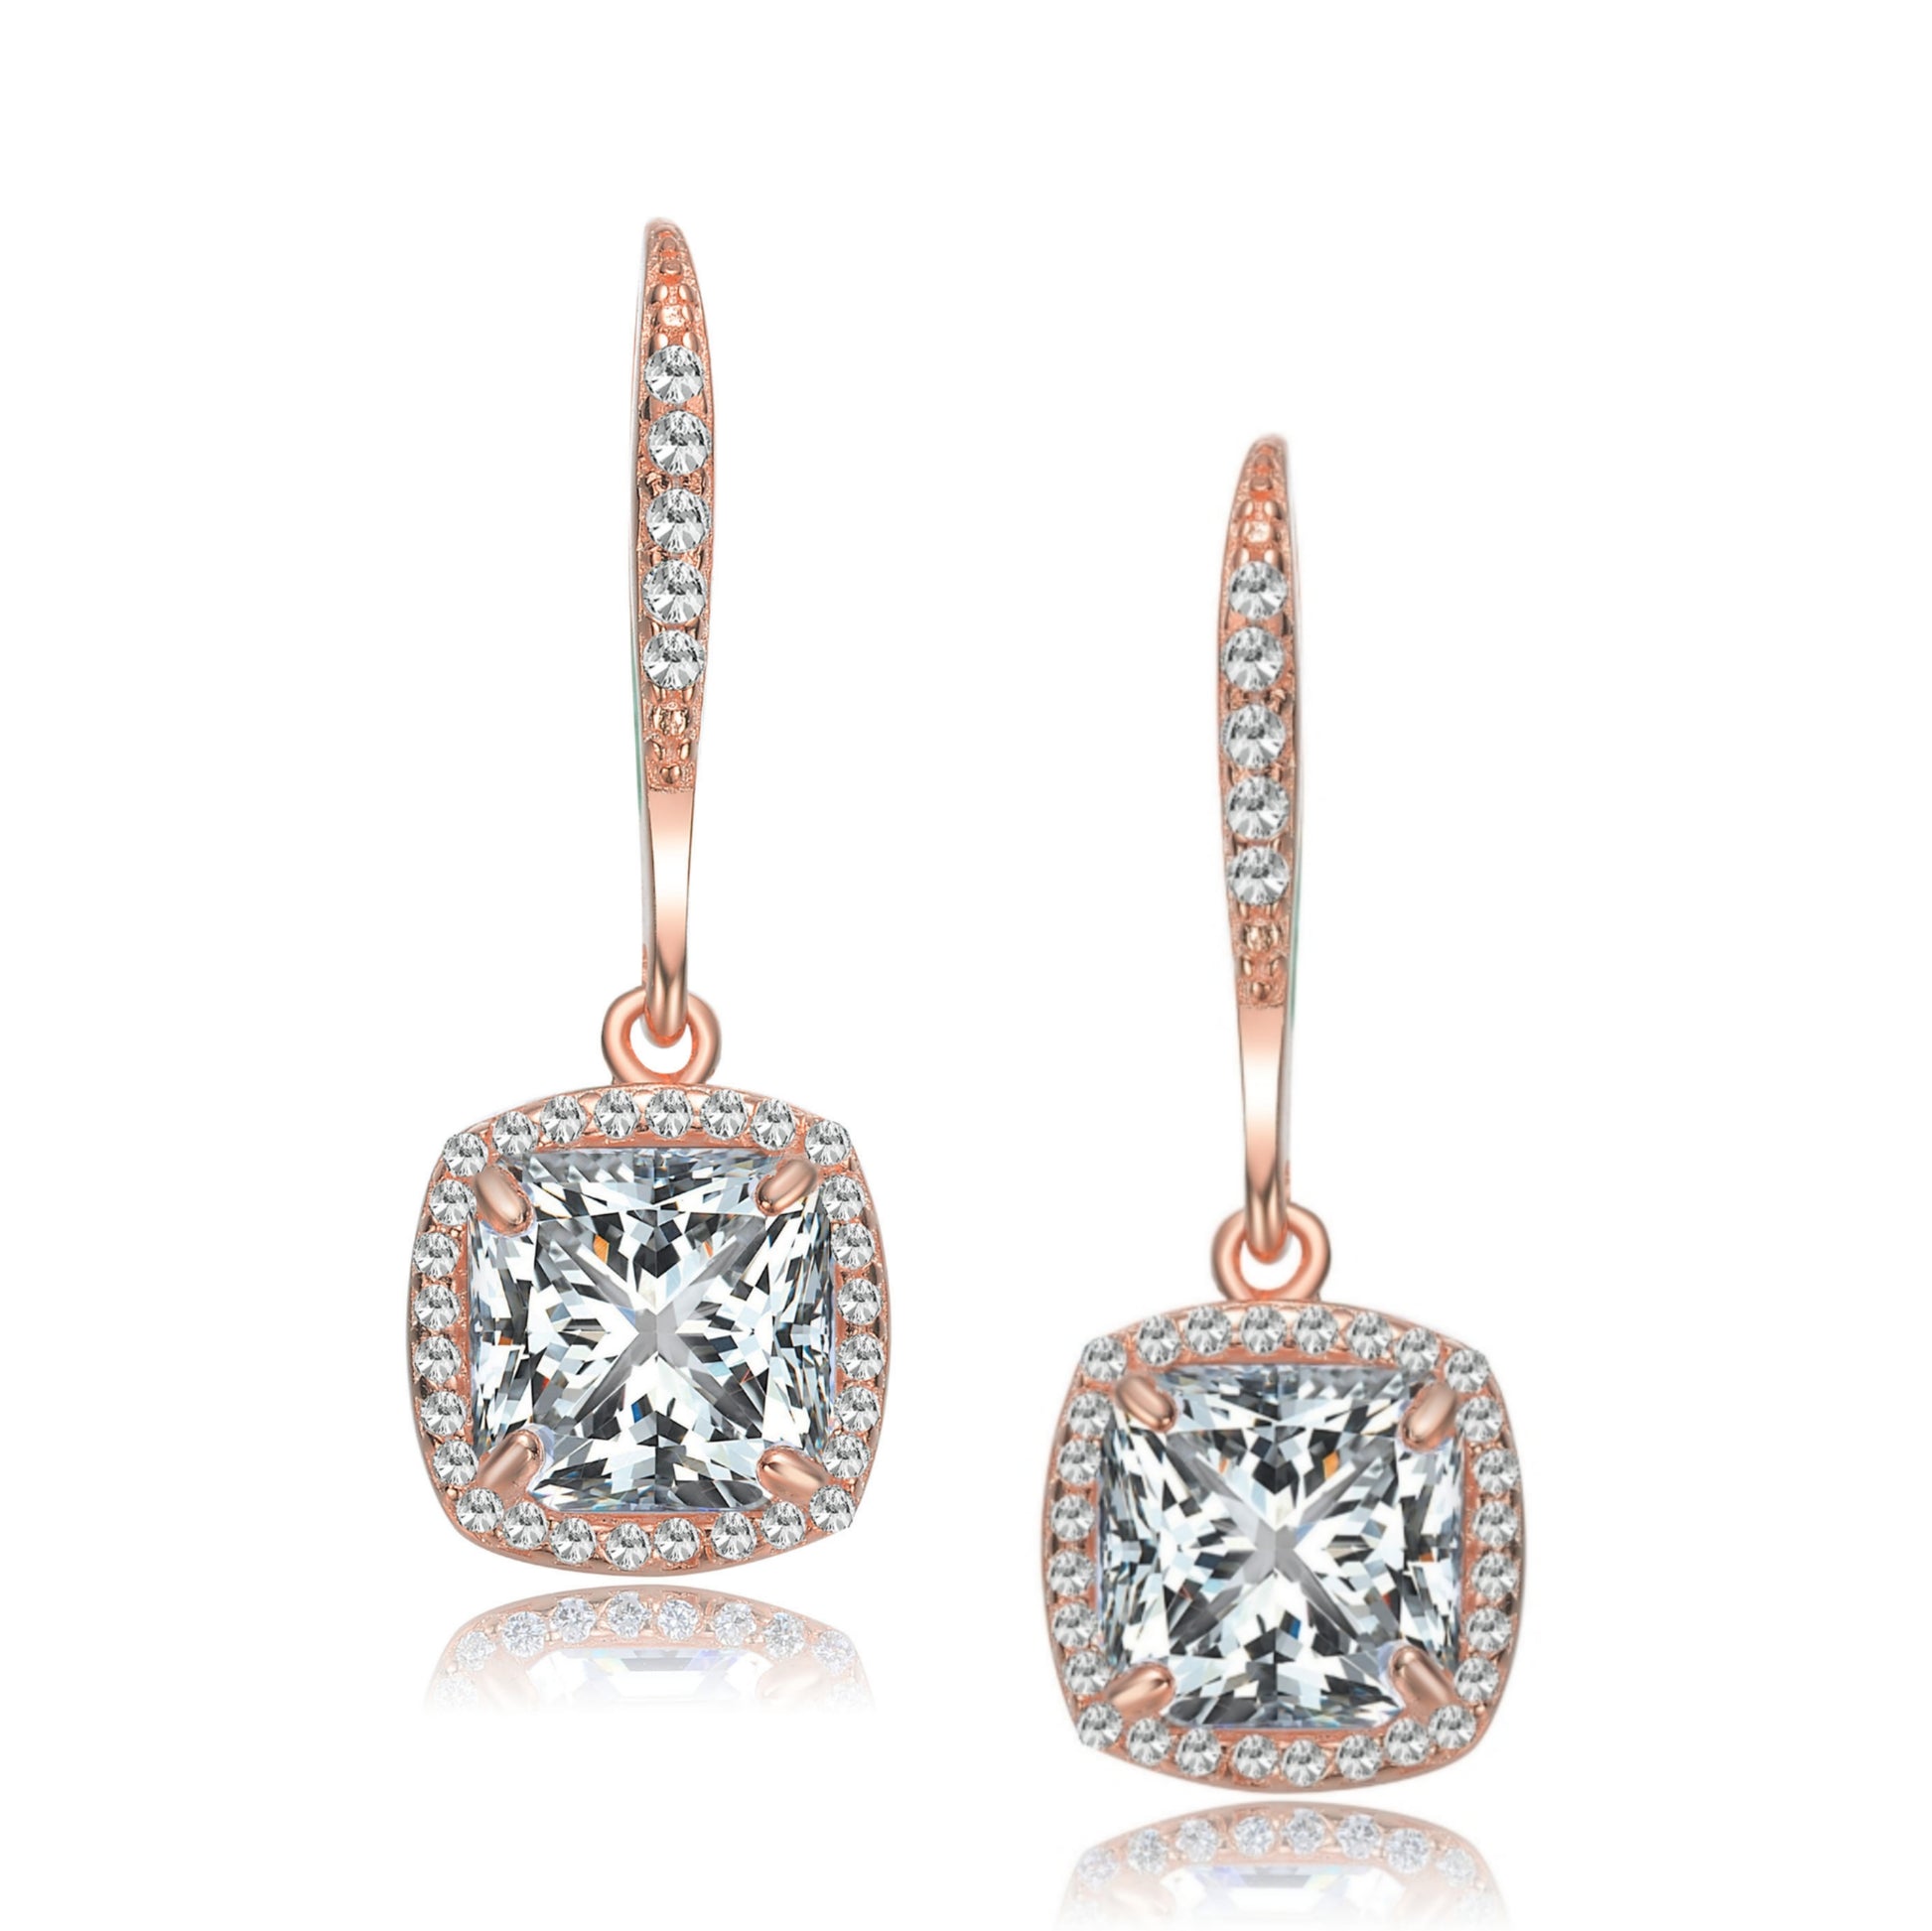 Sterling Silver Square CZ Earrings - HK Jewels